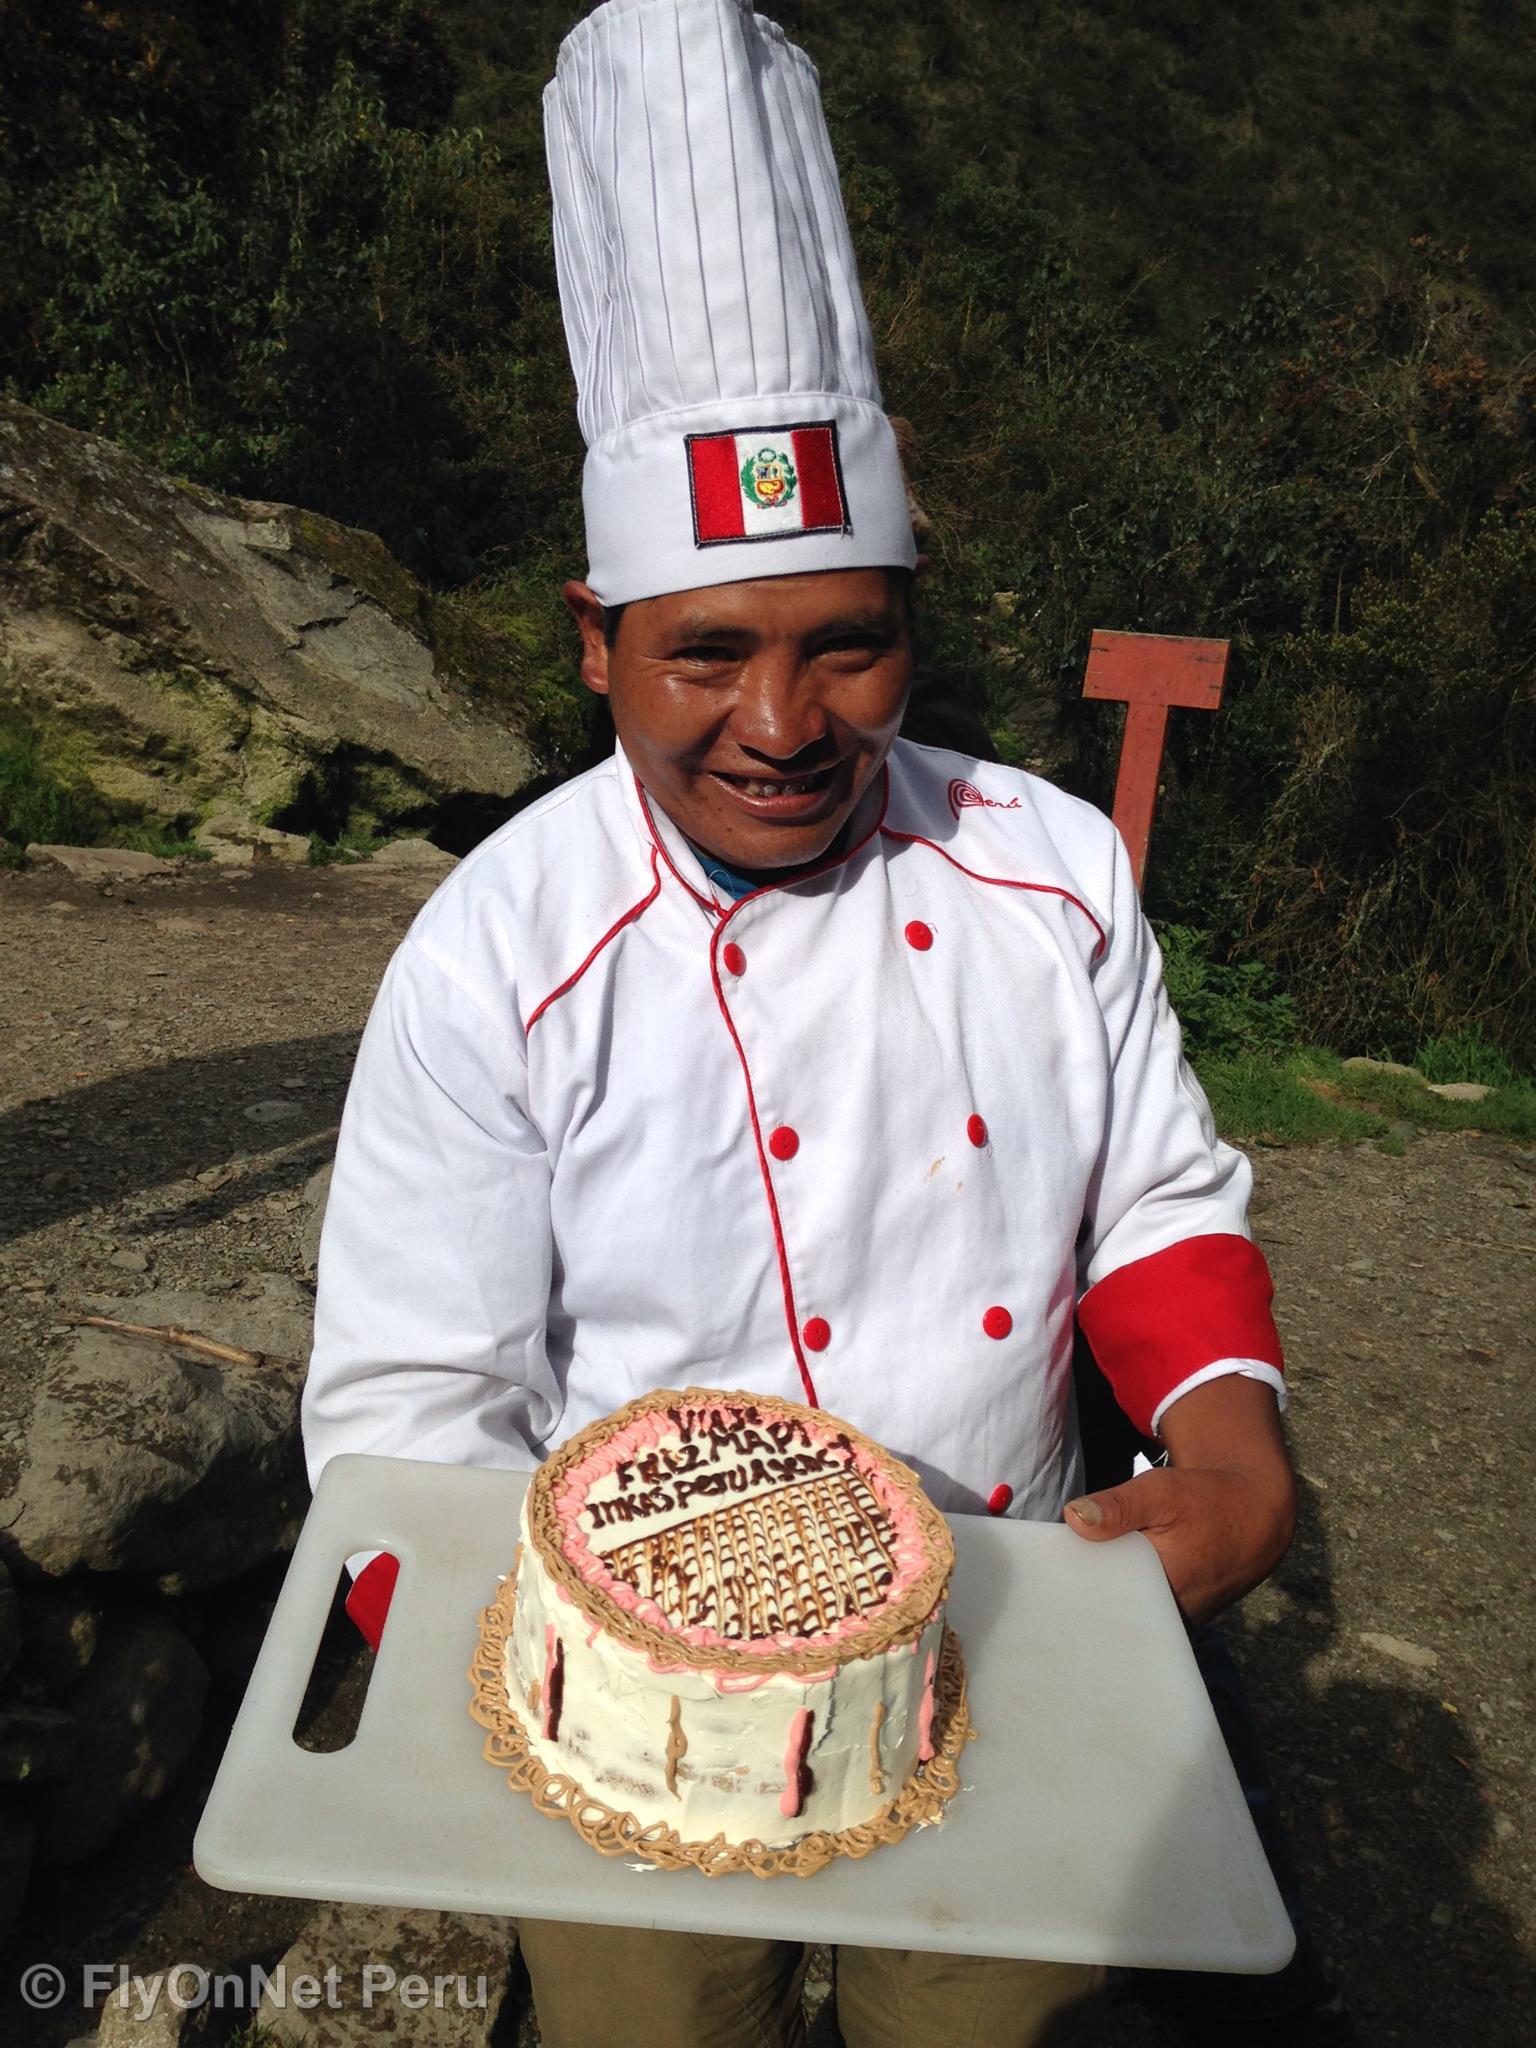 Álbum de fotos: Nuestro cocinero preparando una torta, Camino Inca